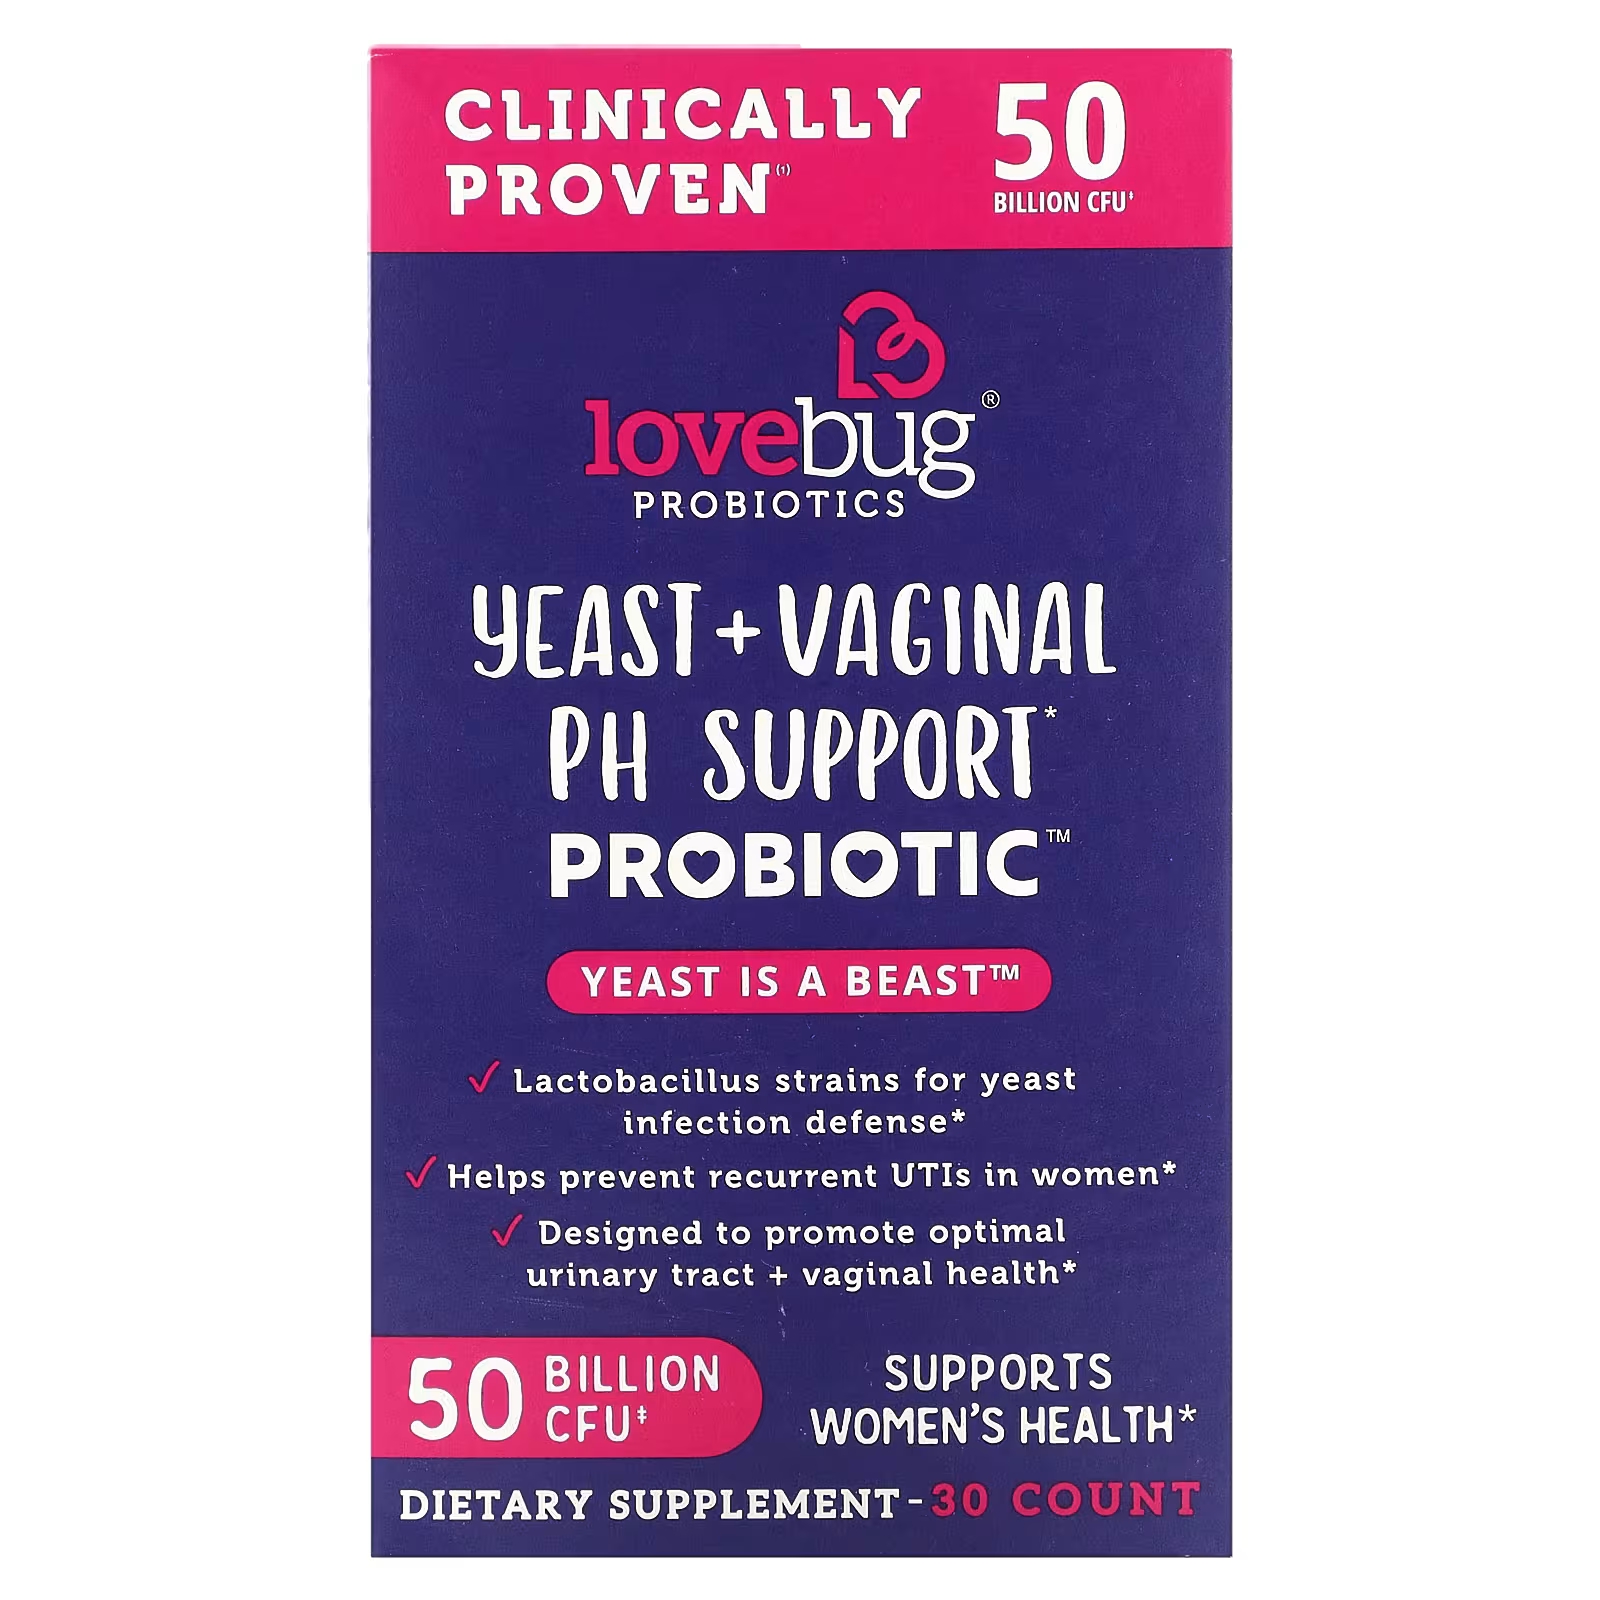 Пробиотики LoveBug, дрожжи + пробиотик для поддержки вагинального уровня pH, 50 миллиардов КОЕ, 30 шт. LoveBug Probiotics